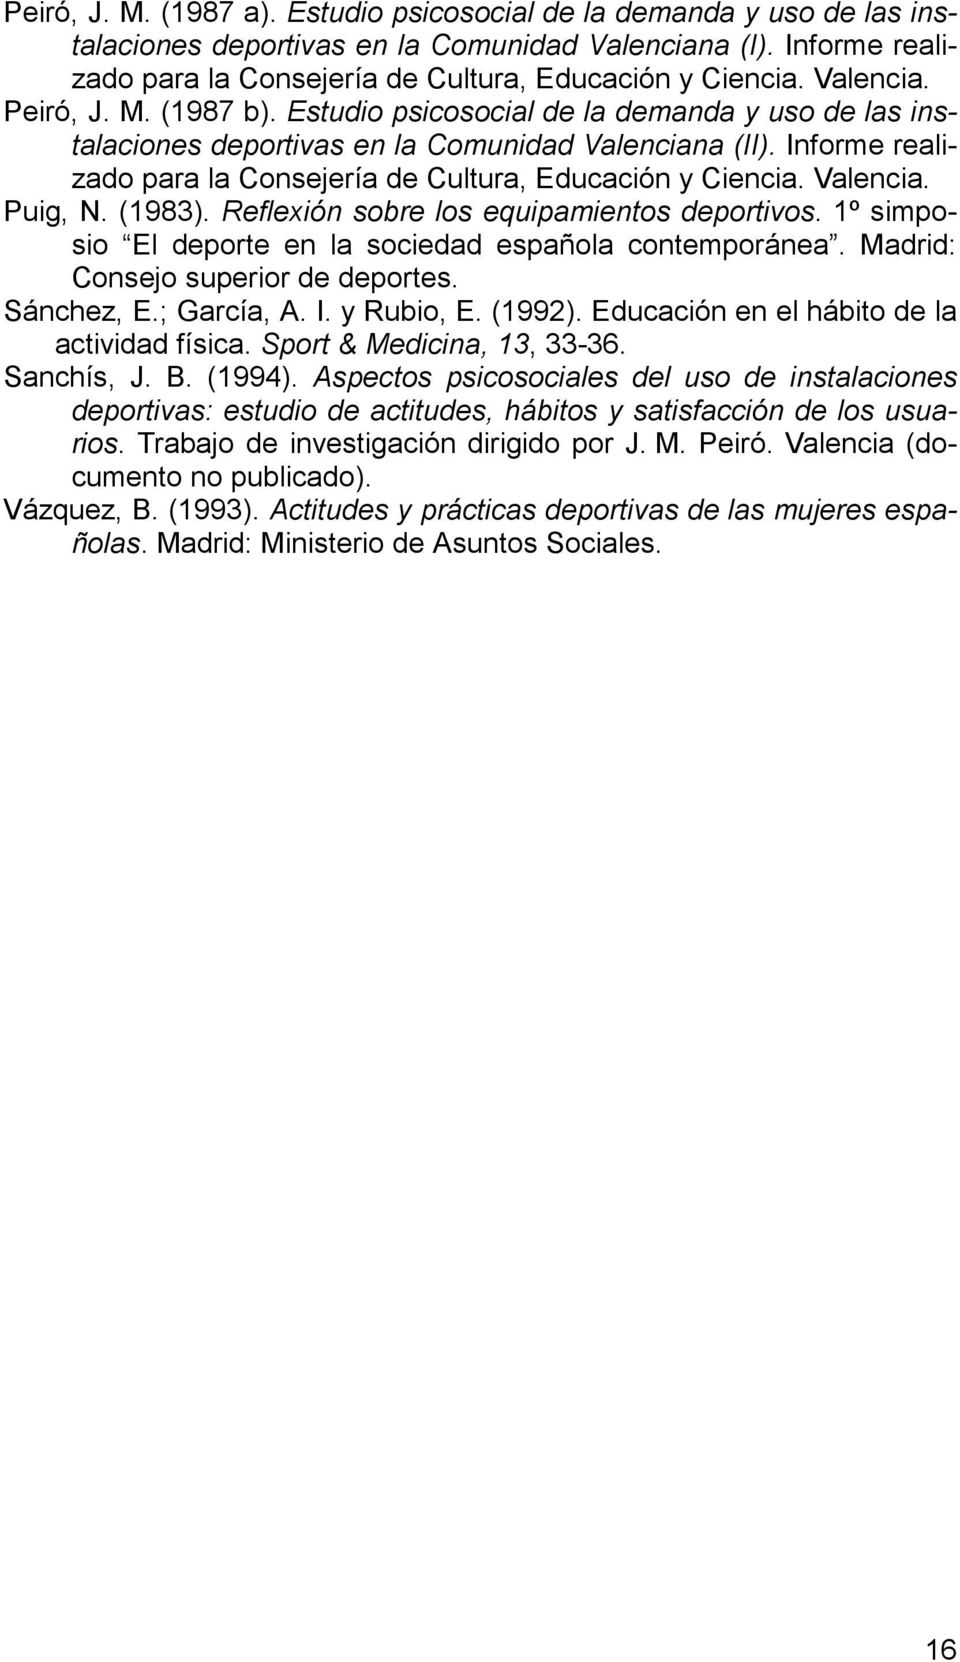 Informe realizado para la Consejería de Cultura, Educación y Ciencia. Valencia. Puig, N. (1983). Reflexión sobre los equipamientos deportivos.